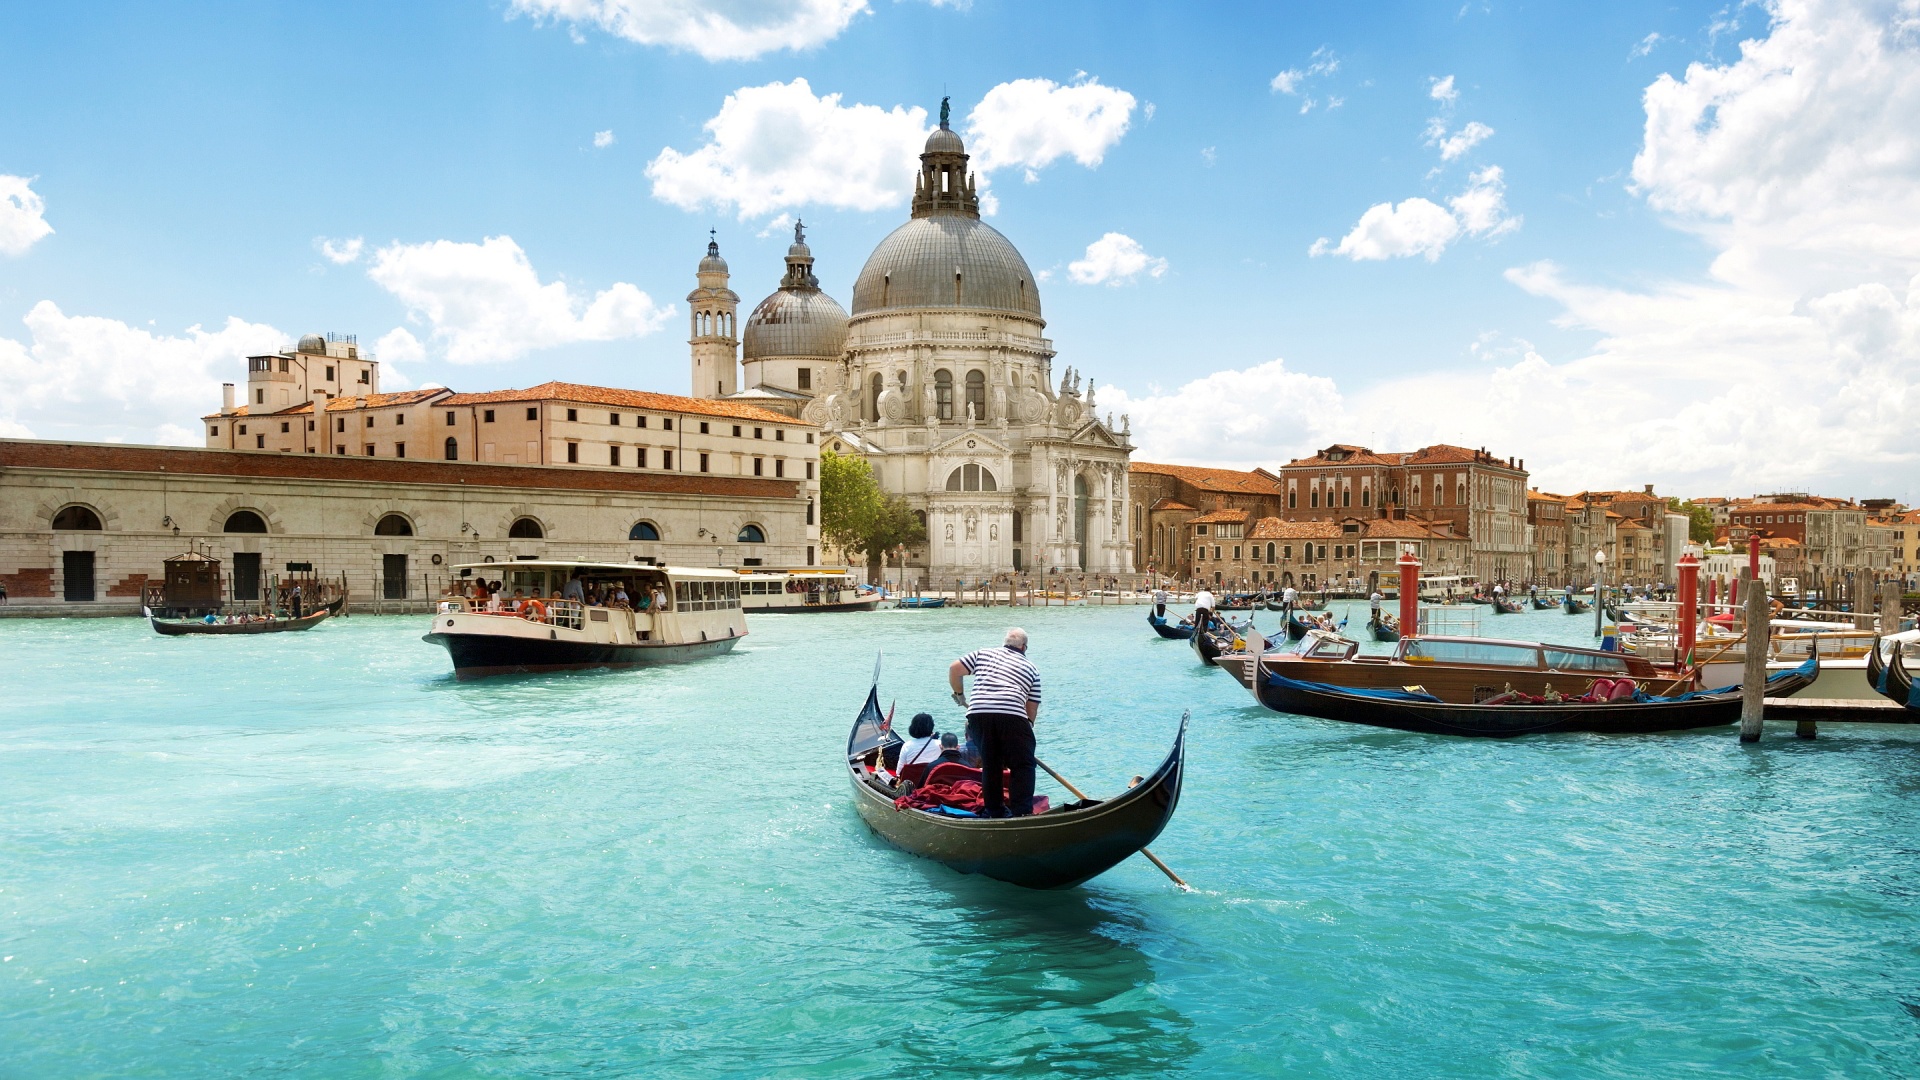 Tìm hiểu đôi nét về thành phố Venice nước Ý